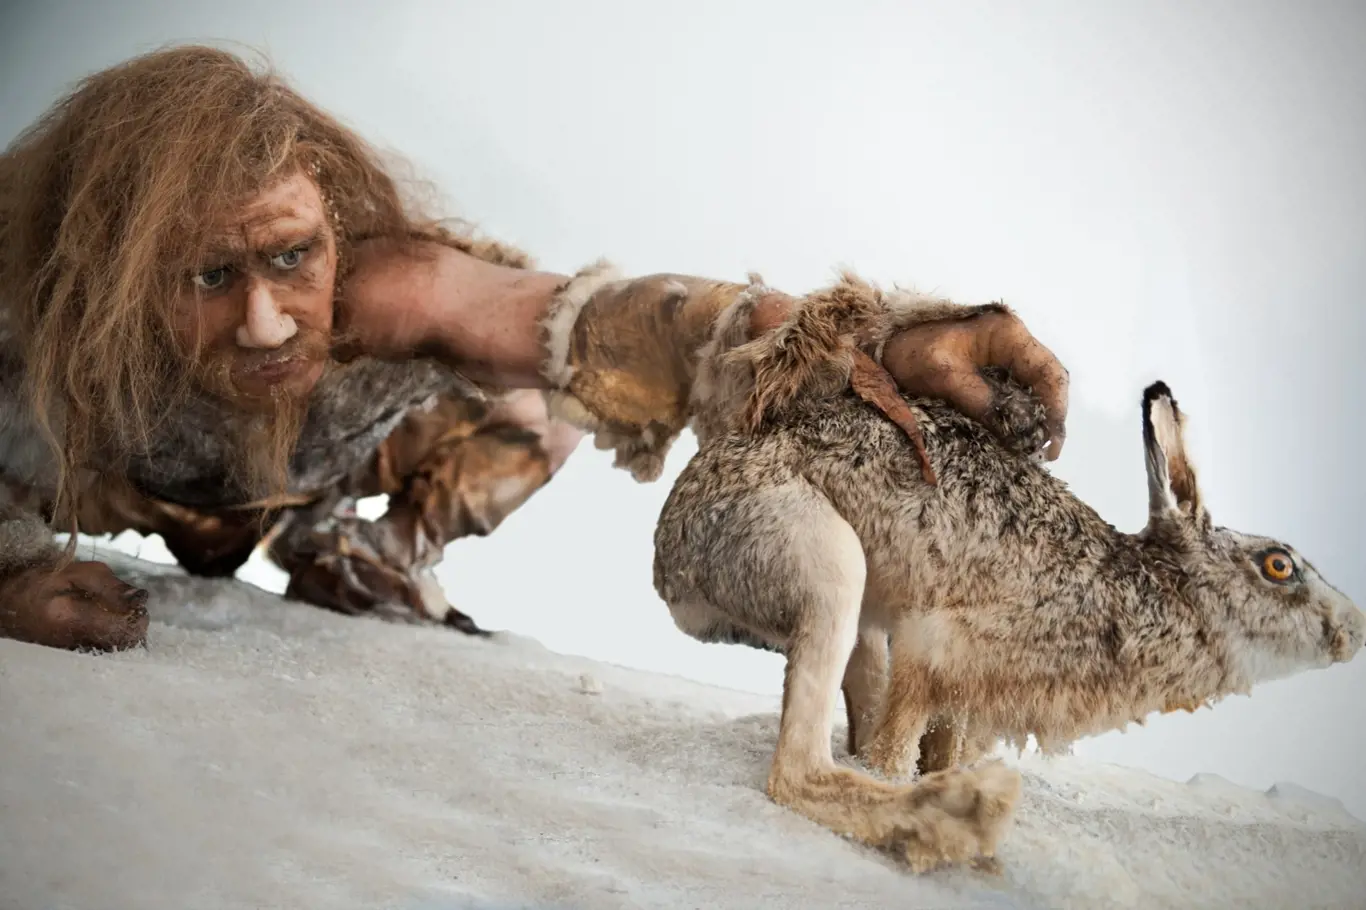 Co stálo za vymřením neandertálců? Byli jsme to my, Homo sapiens?